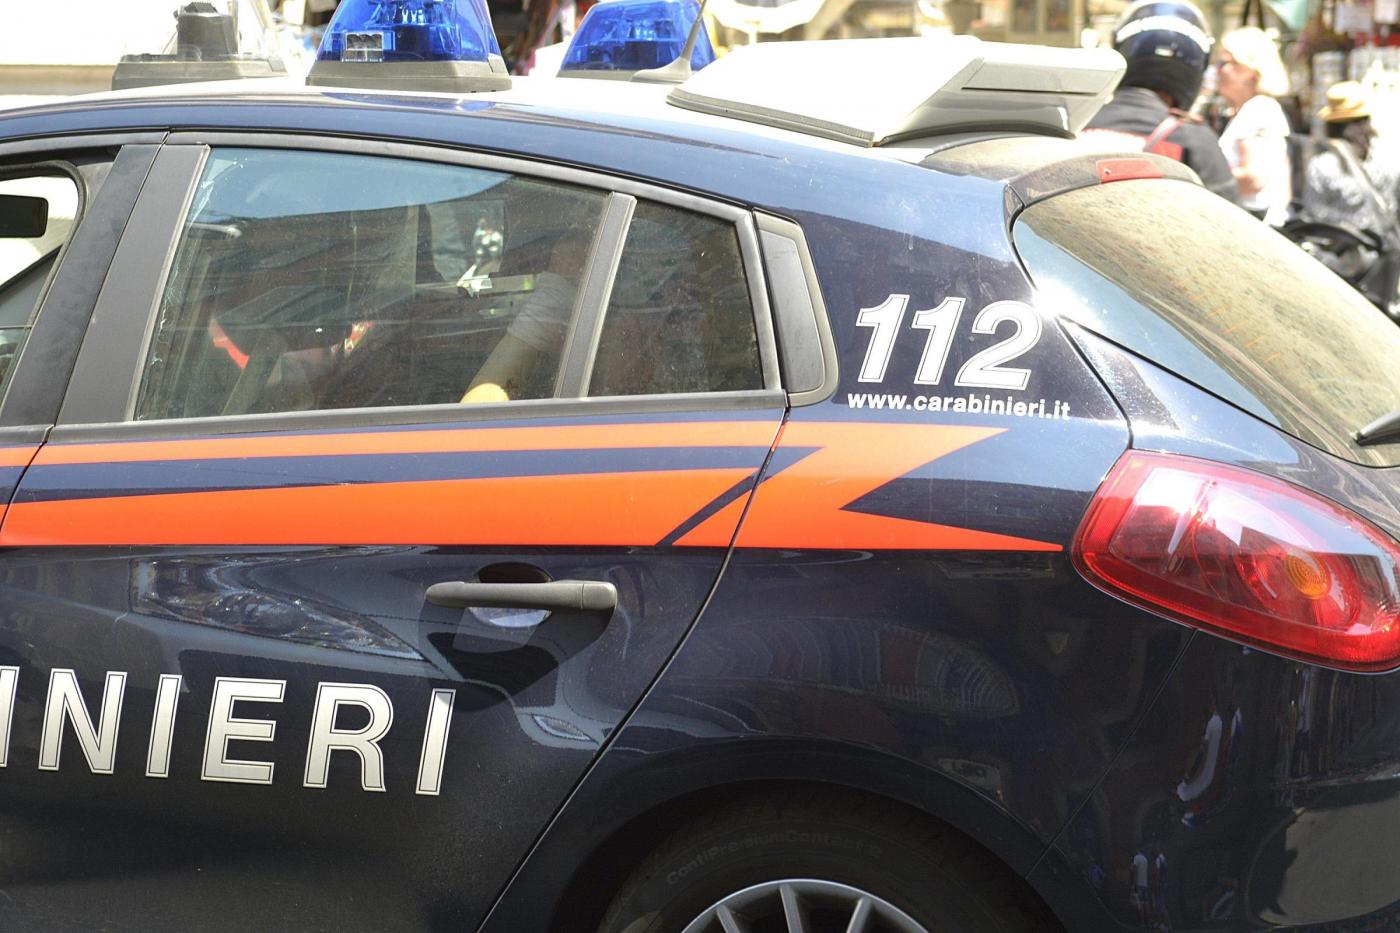 Roma, Carabinieri arrestano tre borseggiatori, via del Corso